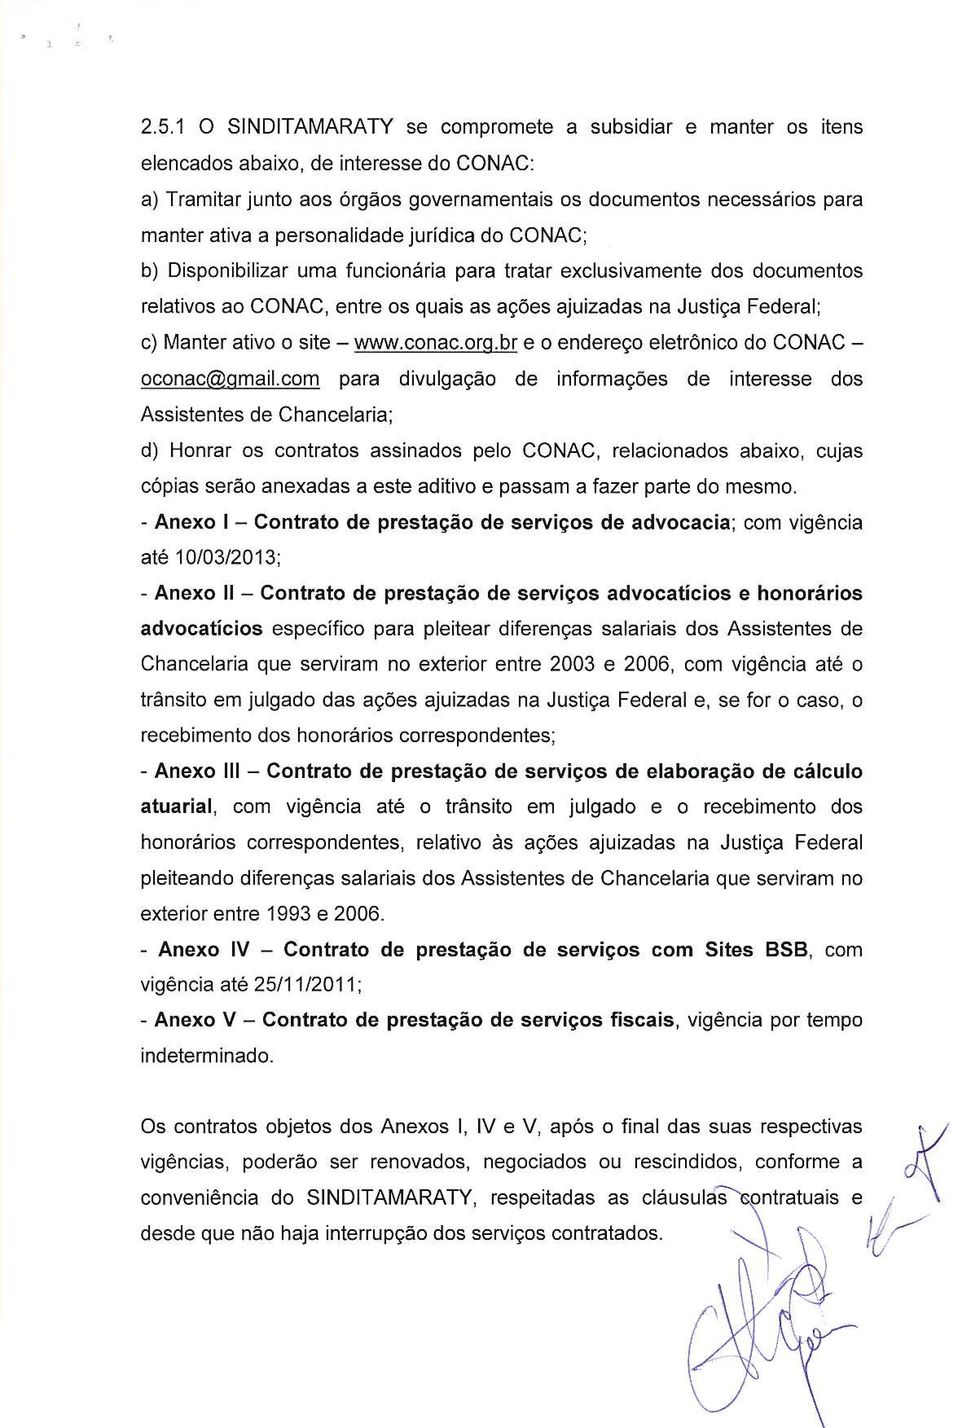 exclusivamente dos documentos relativos ao CONAC, entre os quais as ações ajuizadas na Justiça Federal; c) Manter ativo o site - www.conac.oro.br e o endereço eletrônico do CONAC - oconac(aqmail.